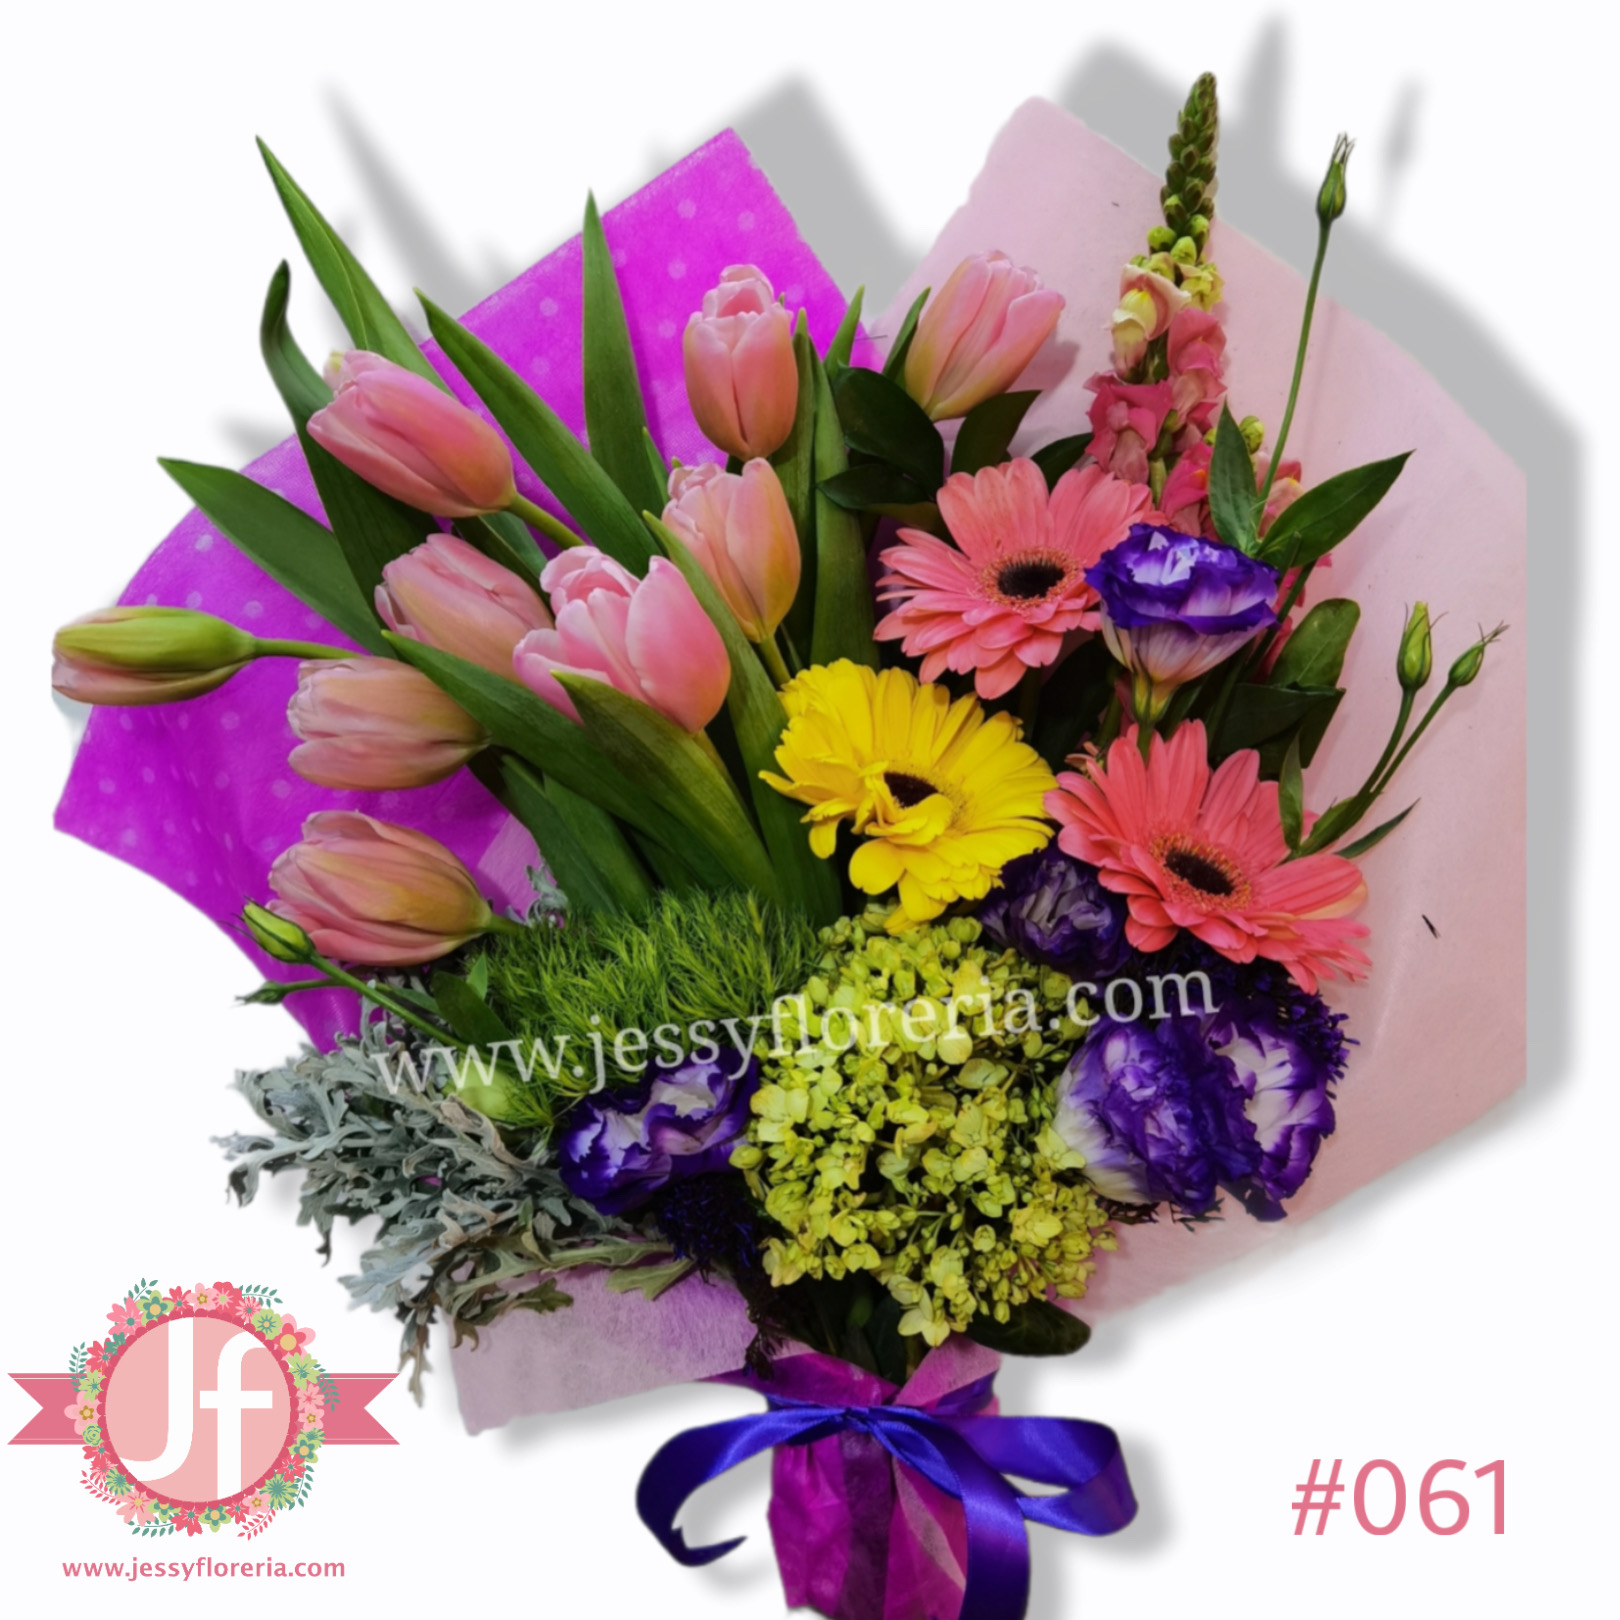 Bouquet de tulipanes y gerberas - Envíos GRATIS Mismo día 2 a 4 Hrs